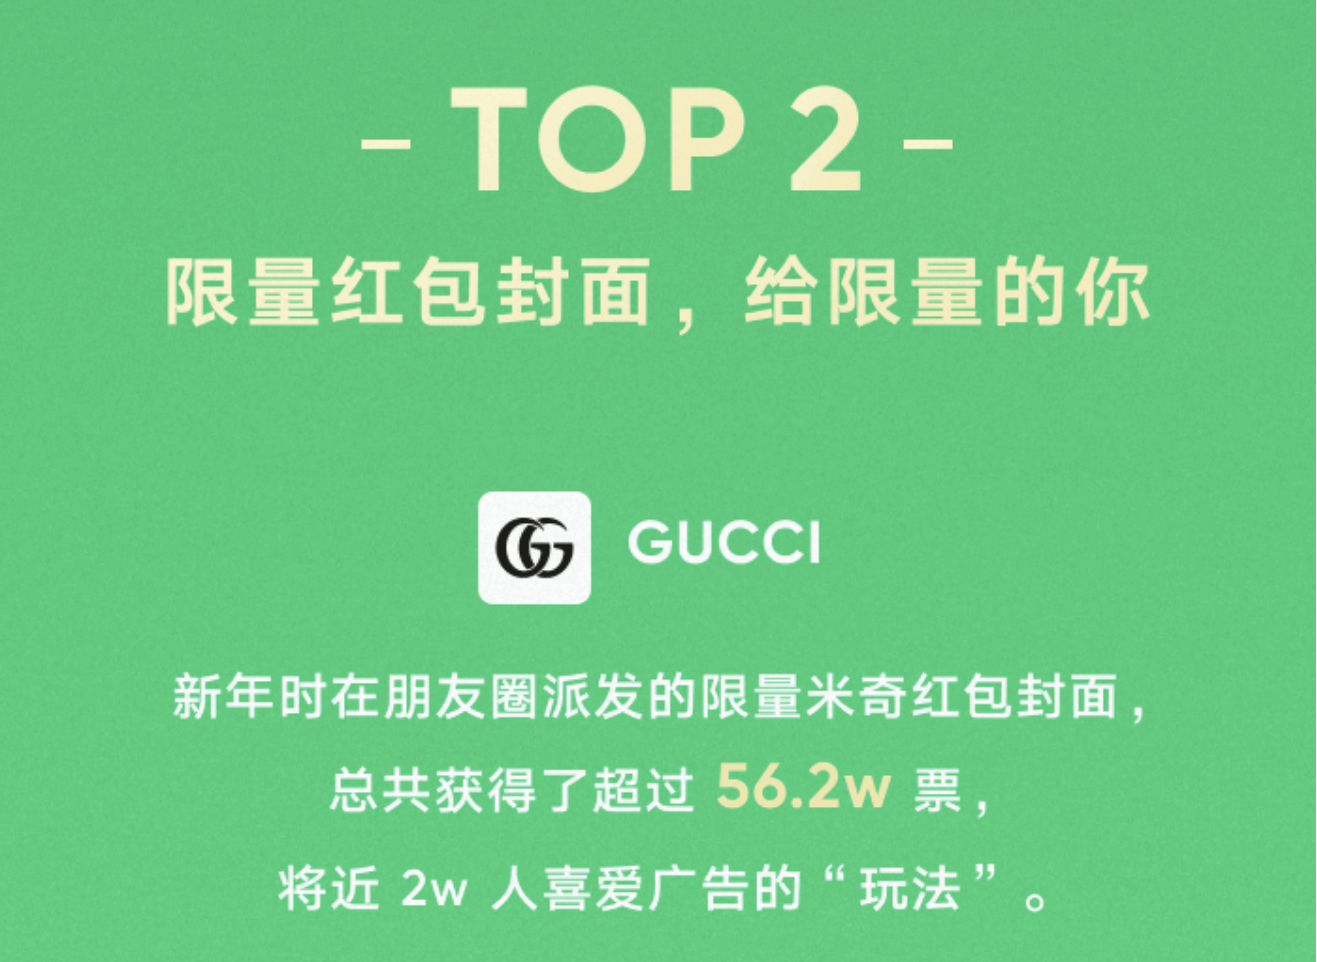 限量|Gucci米奇限量红包封面荣获用户最喜爱的朋友圈广告第二名